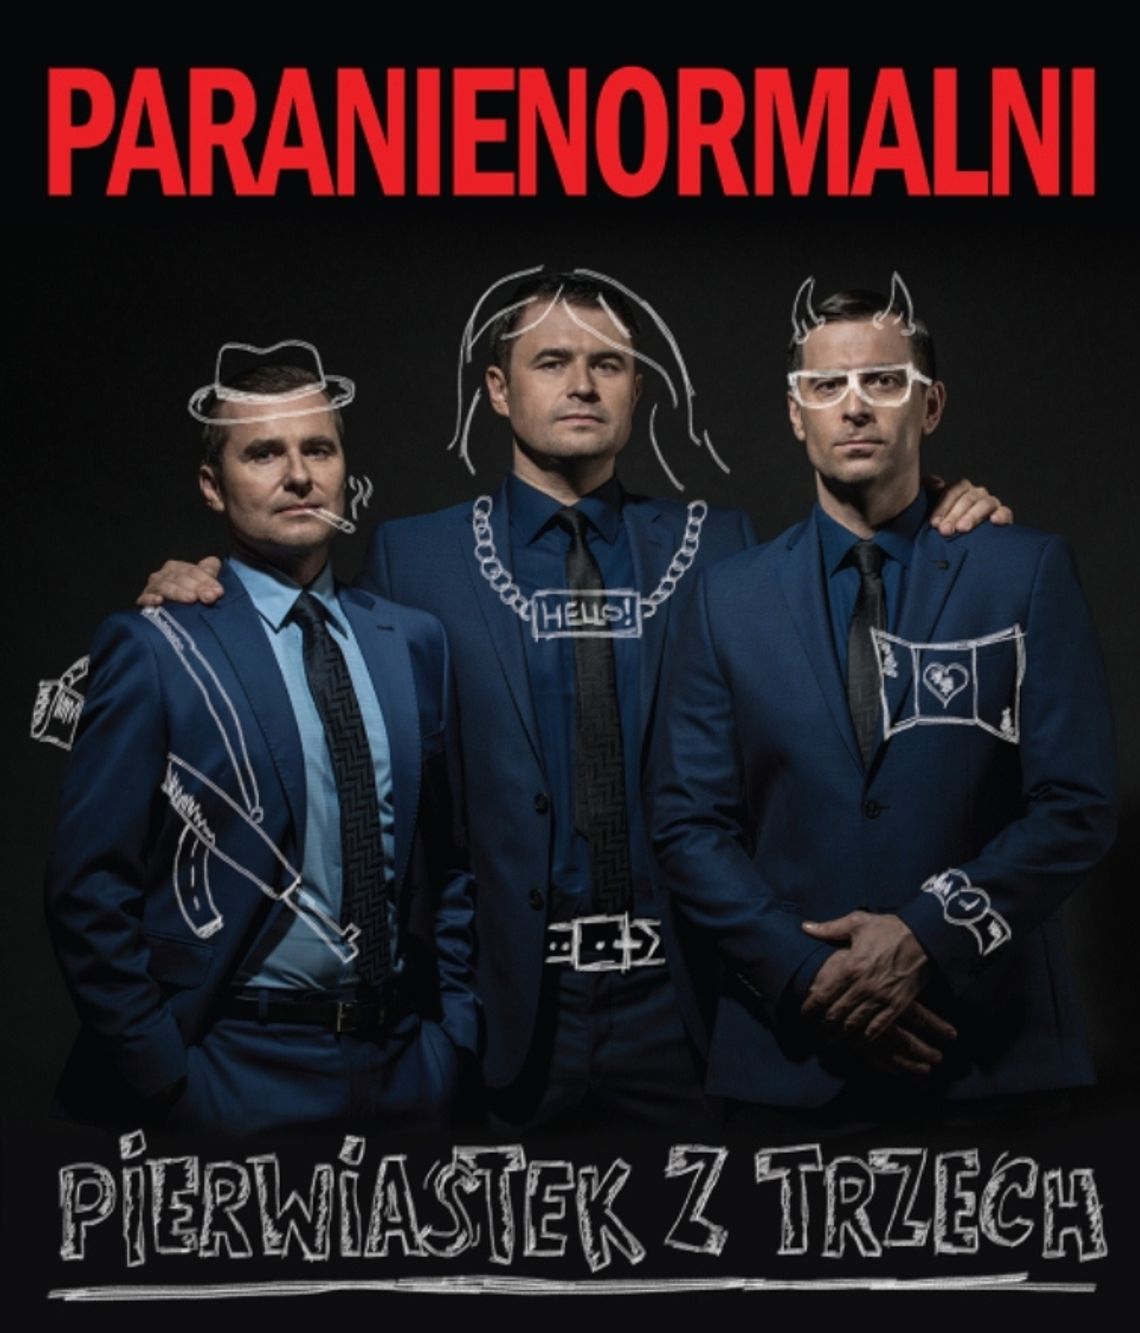 Kabaret Paranienormalni - program PIERWIASTEK Z TRZECH w marcu w Tczewie